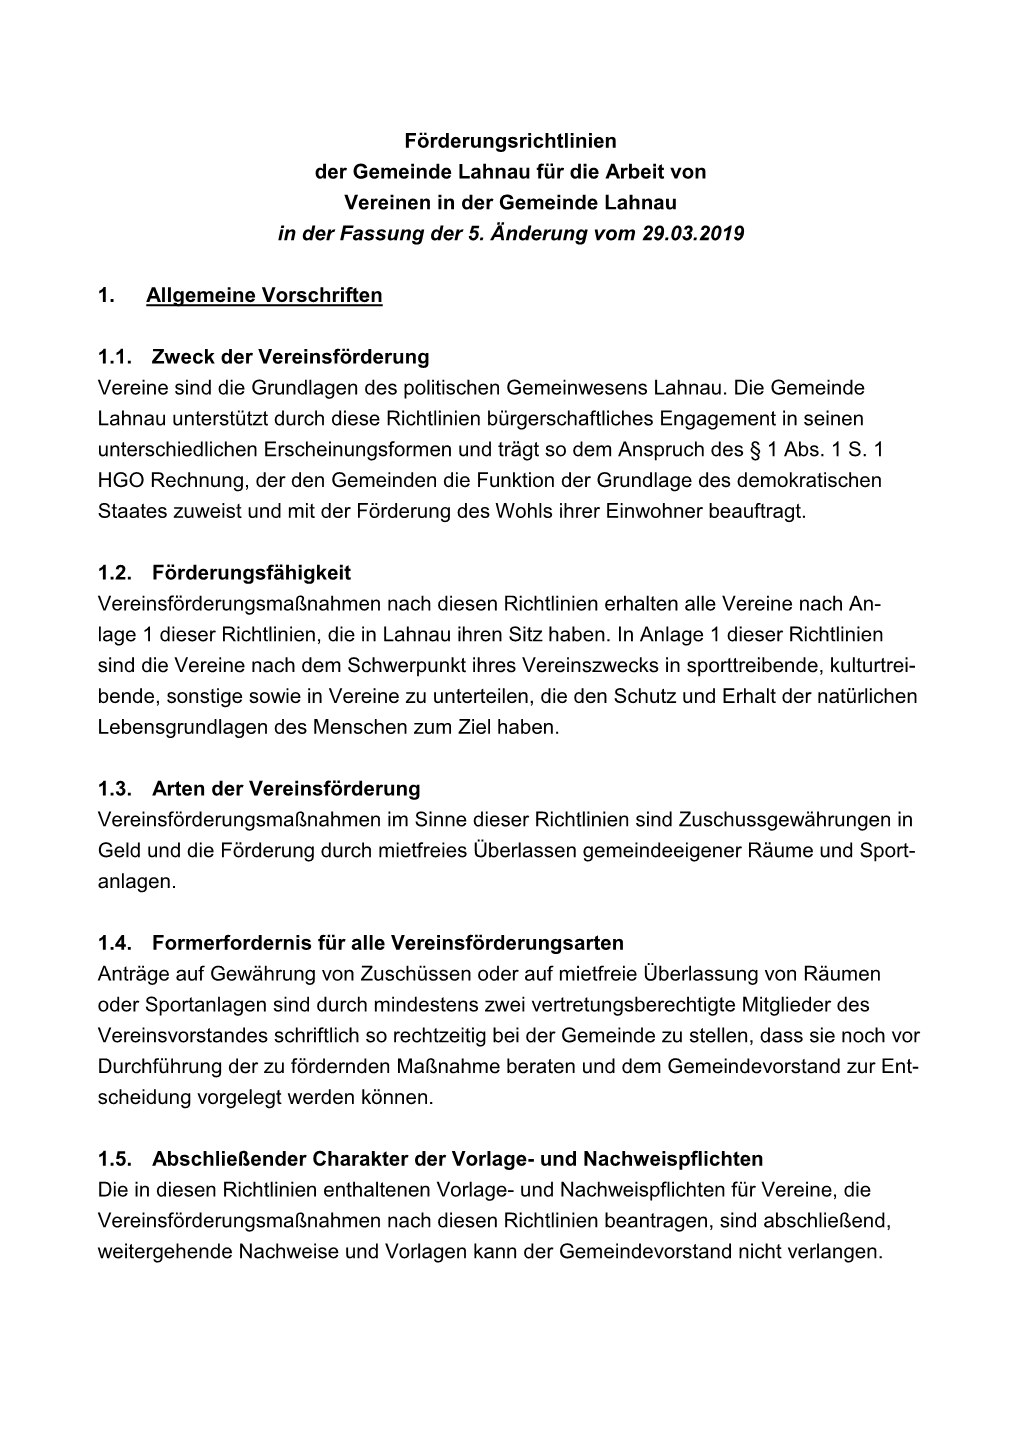 Förderungsrichtlinien Der Gemeinde Lahnau Für Die Arbeit Von Vereinen in Der Gemeinde Lahnau in Der Fassung Der 5